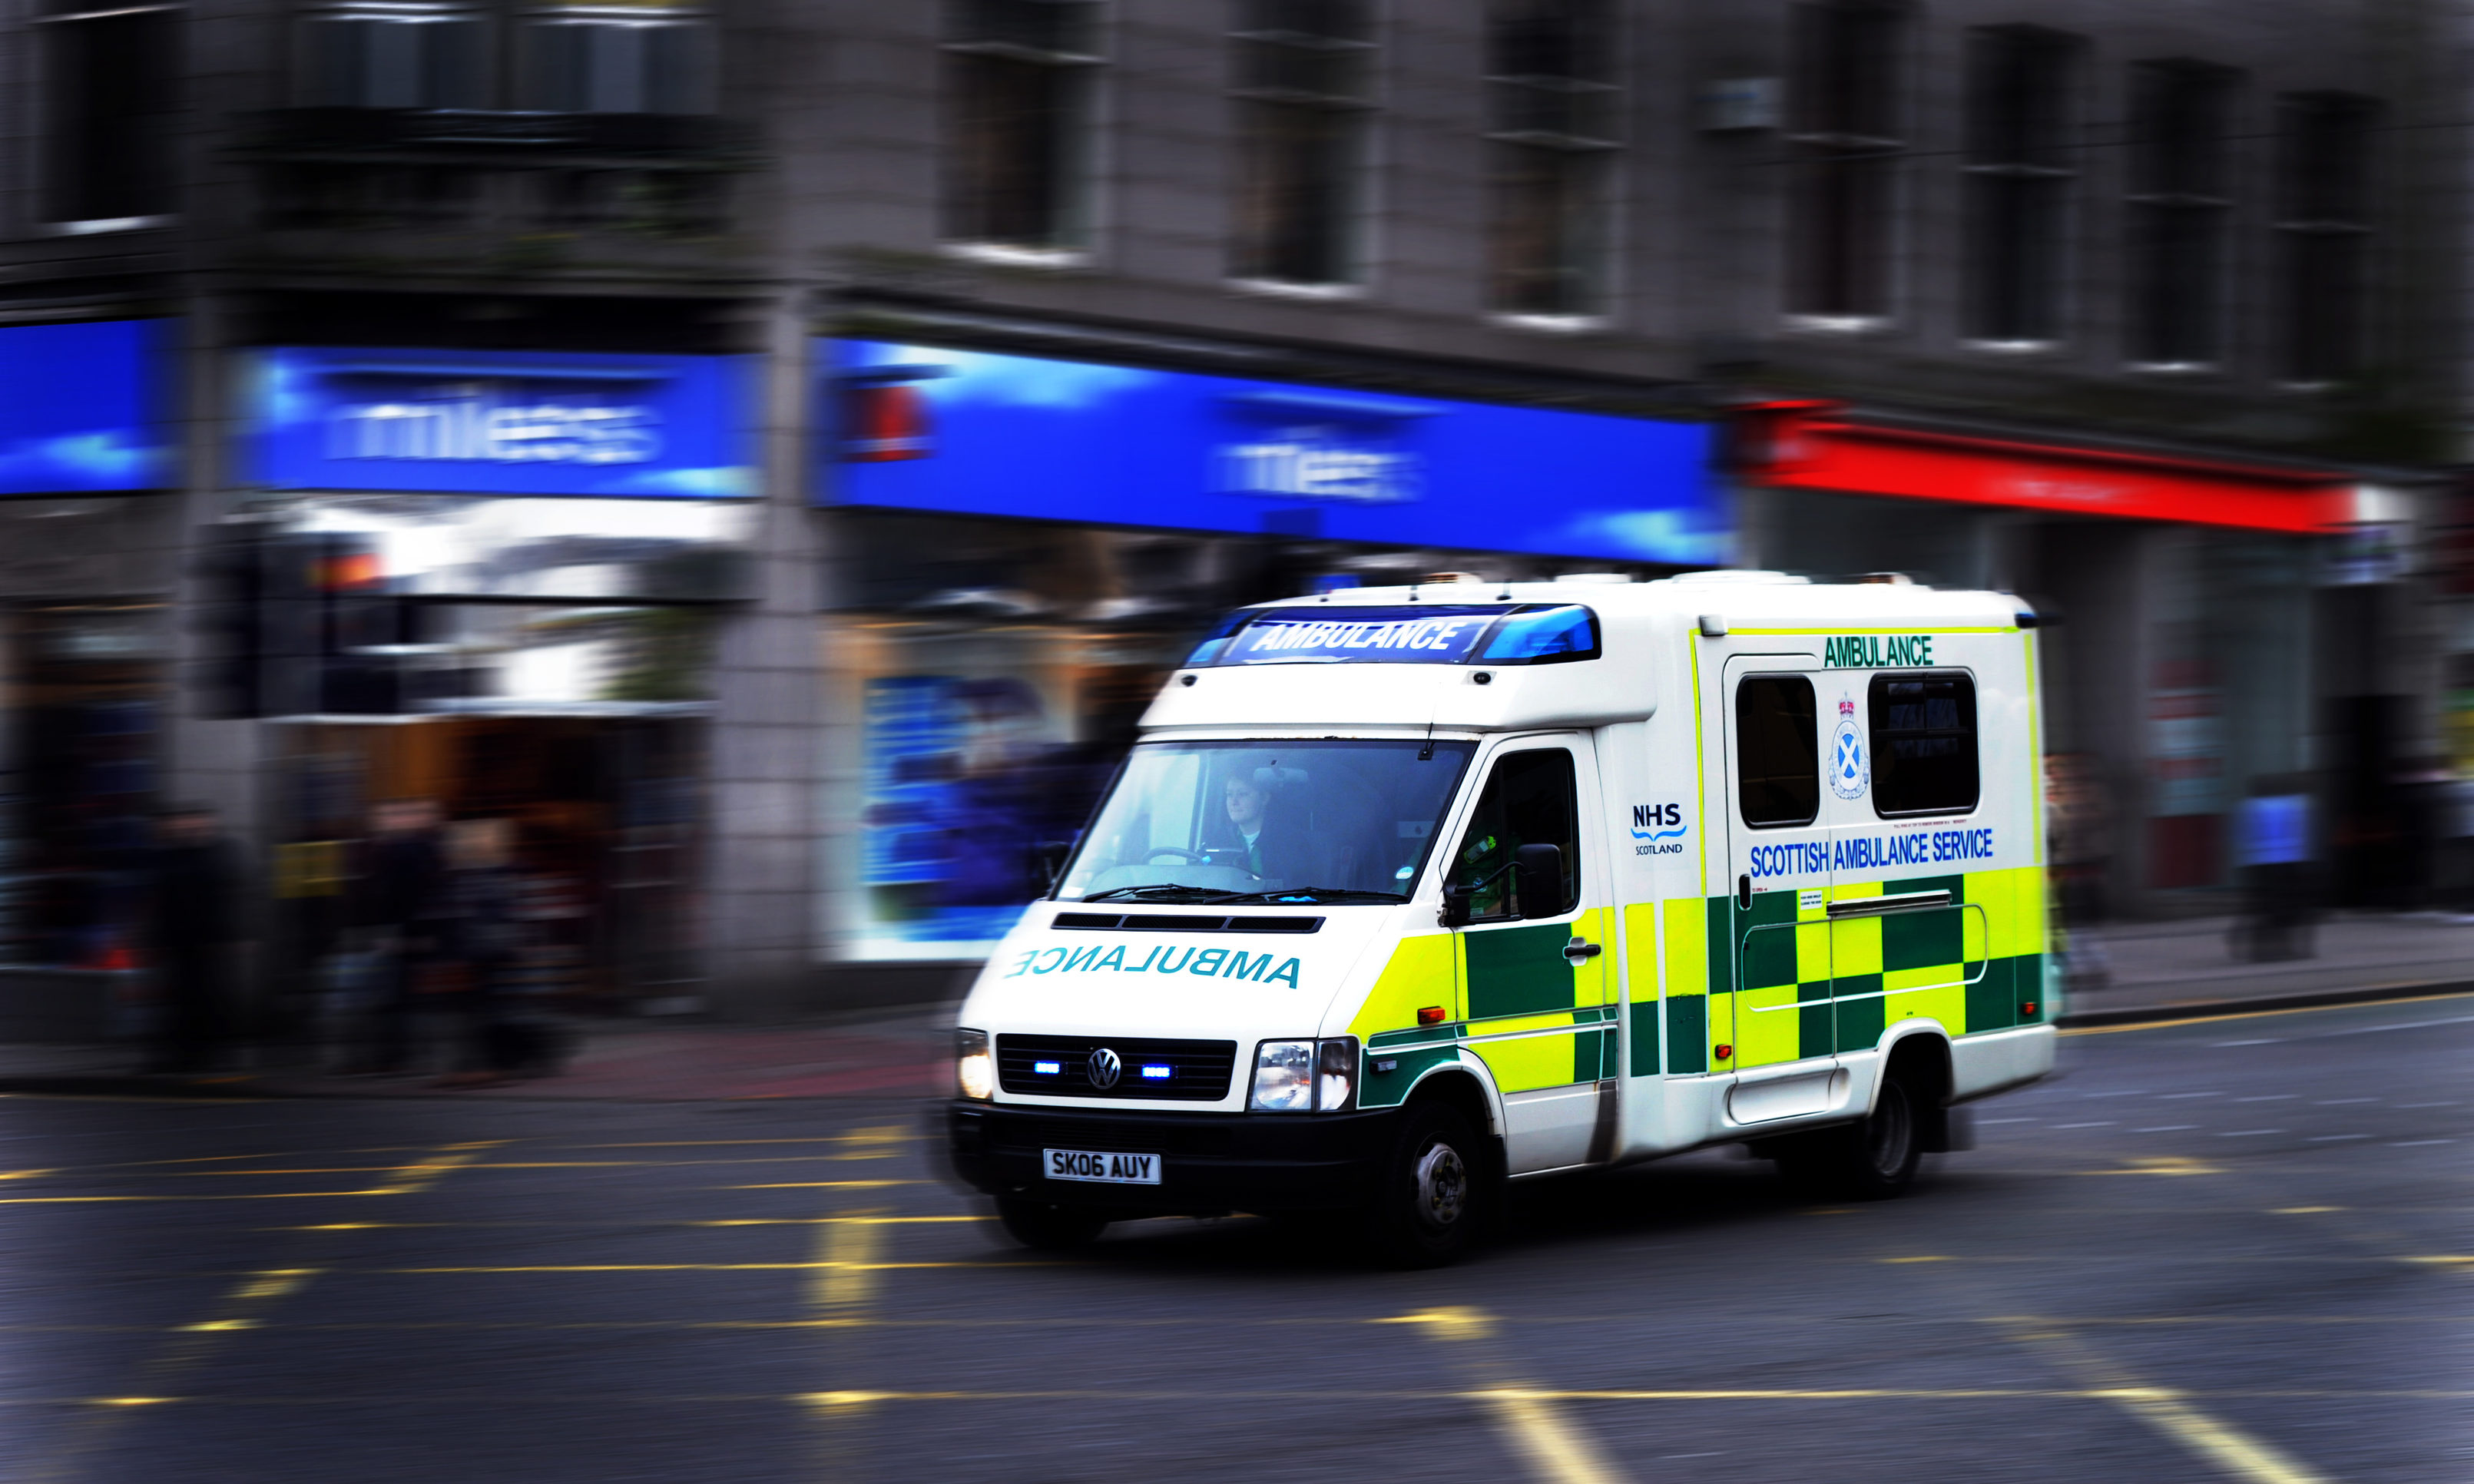 Ambulance arrive. Скорая в Австралии. Ambulance. NHS Scotland Ambulance униформа. Форма скорой помощи в Шотландии.